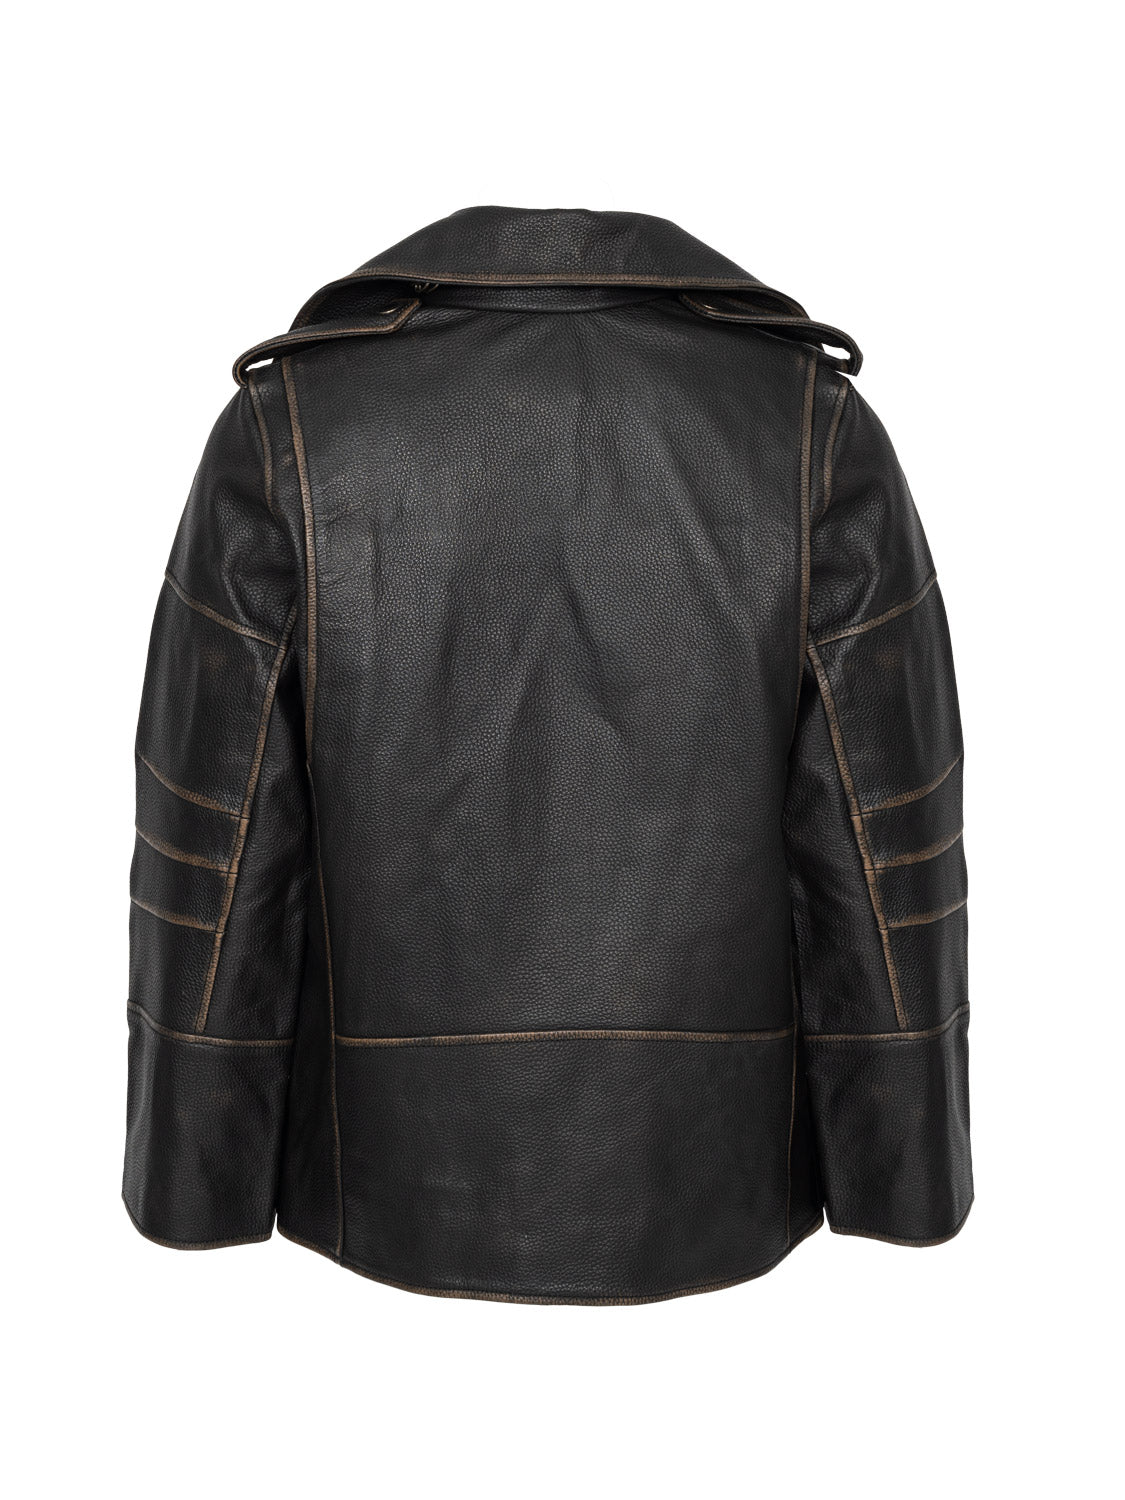 Beatrisse Leather Jacket